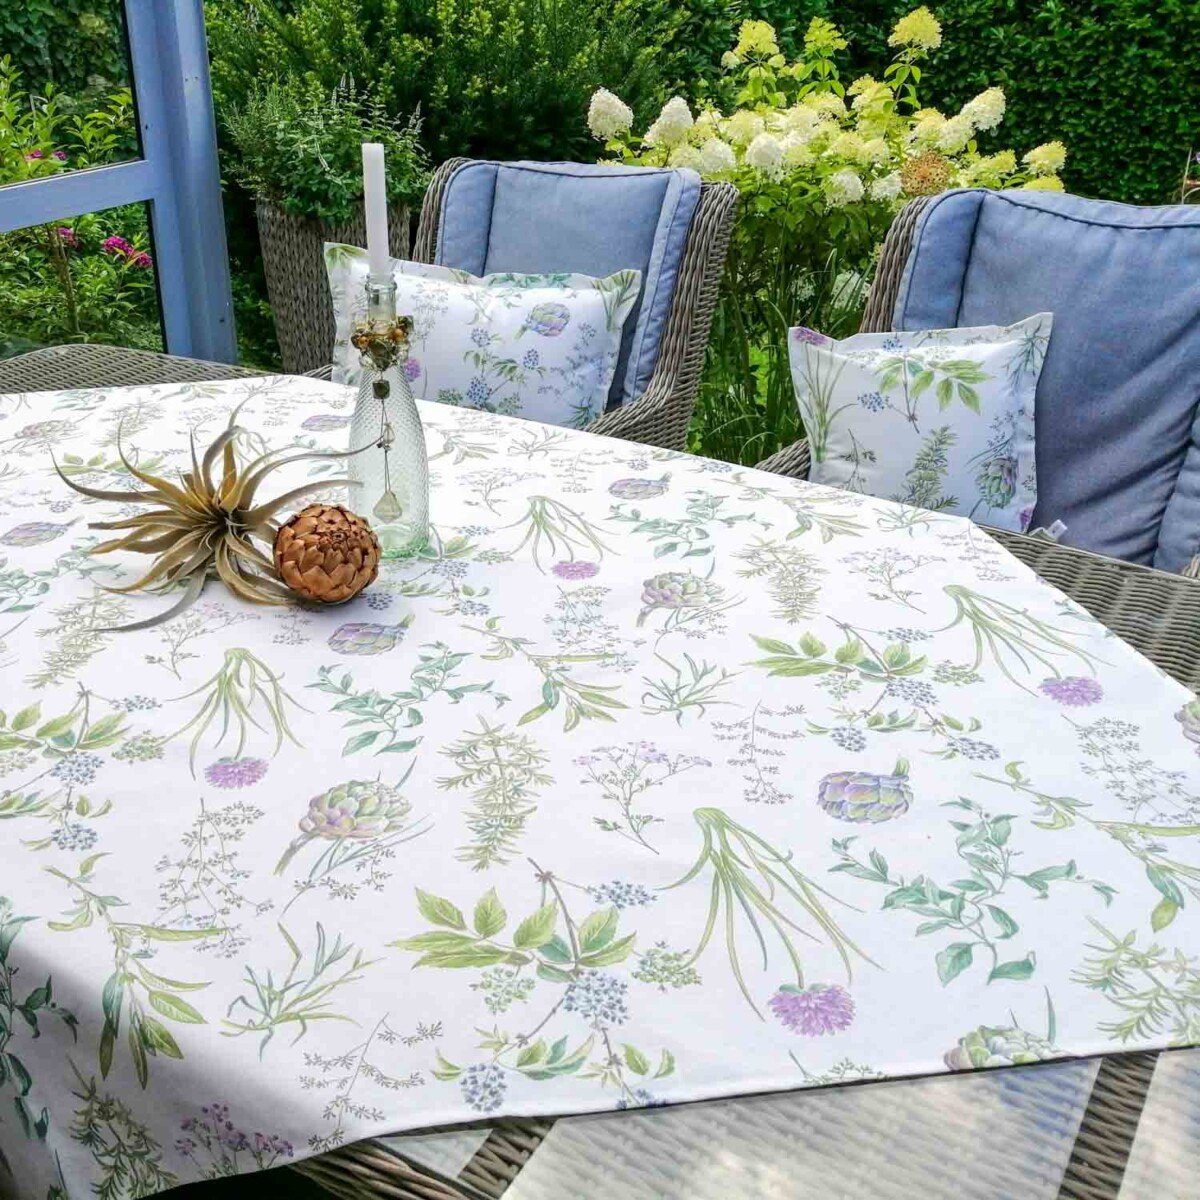 Artischocke Tischdecke Mit Baumwolle: Tischdecke Liebe dekoriert beschichtete